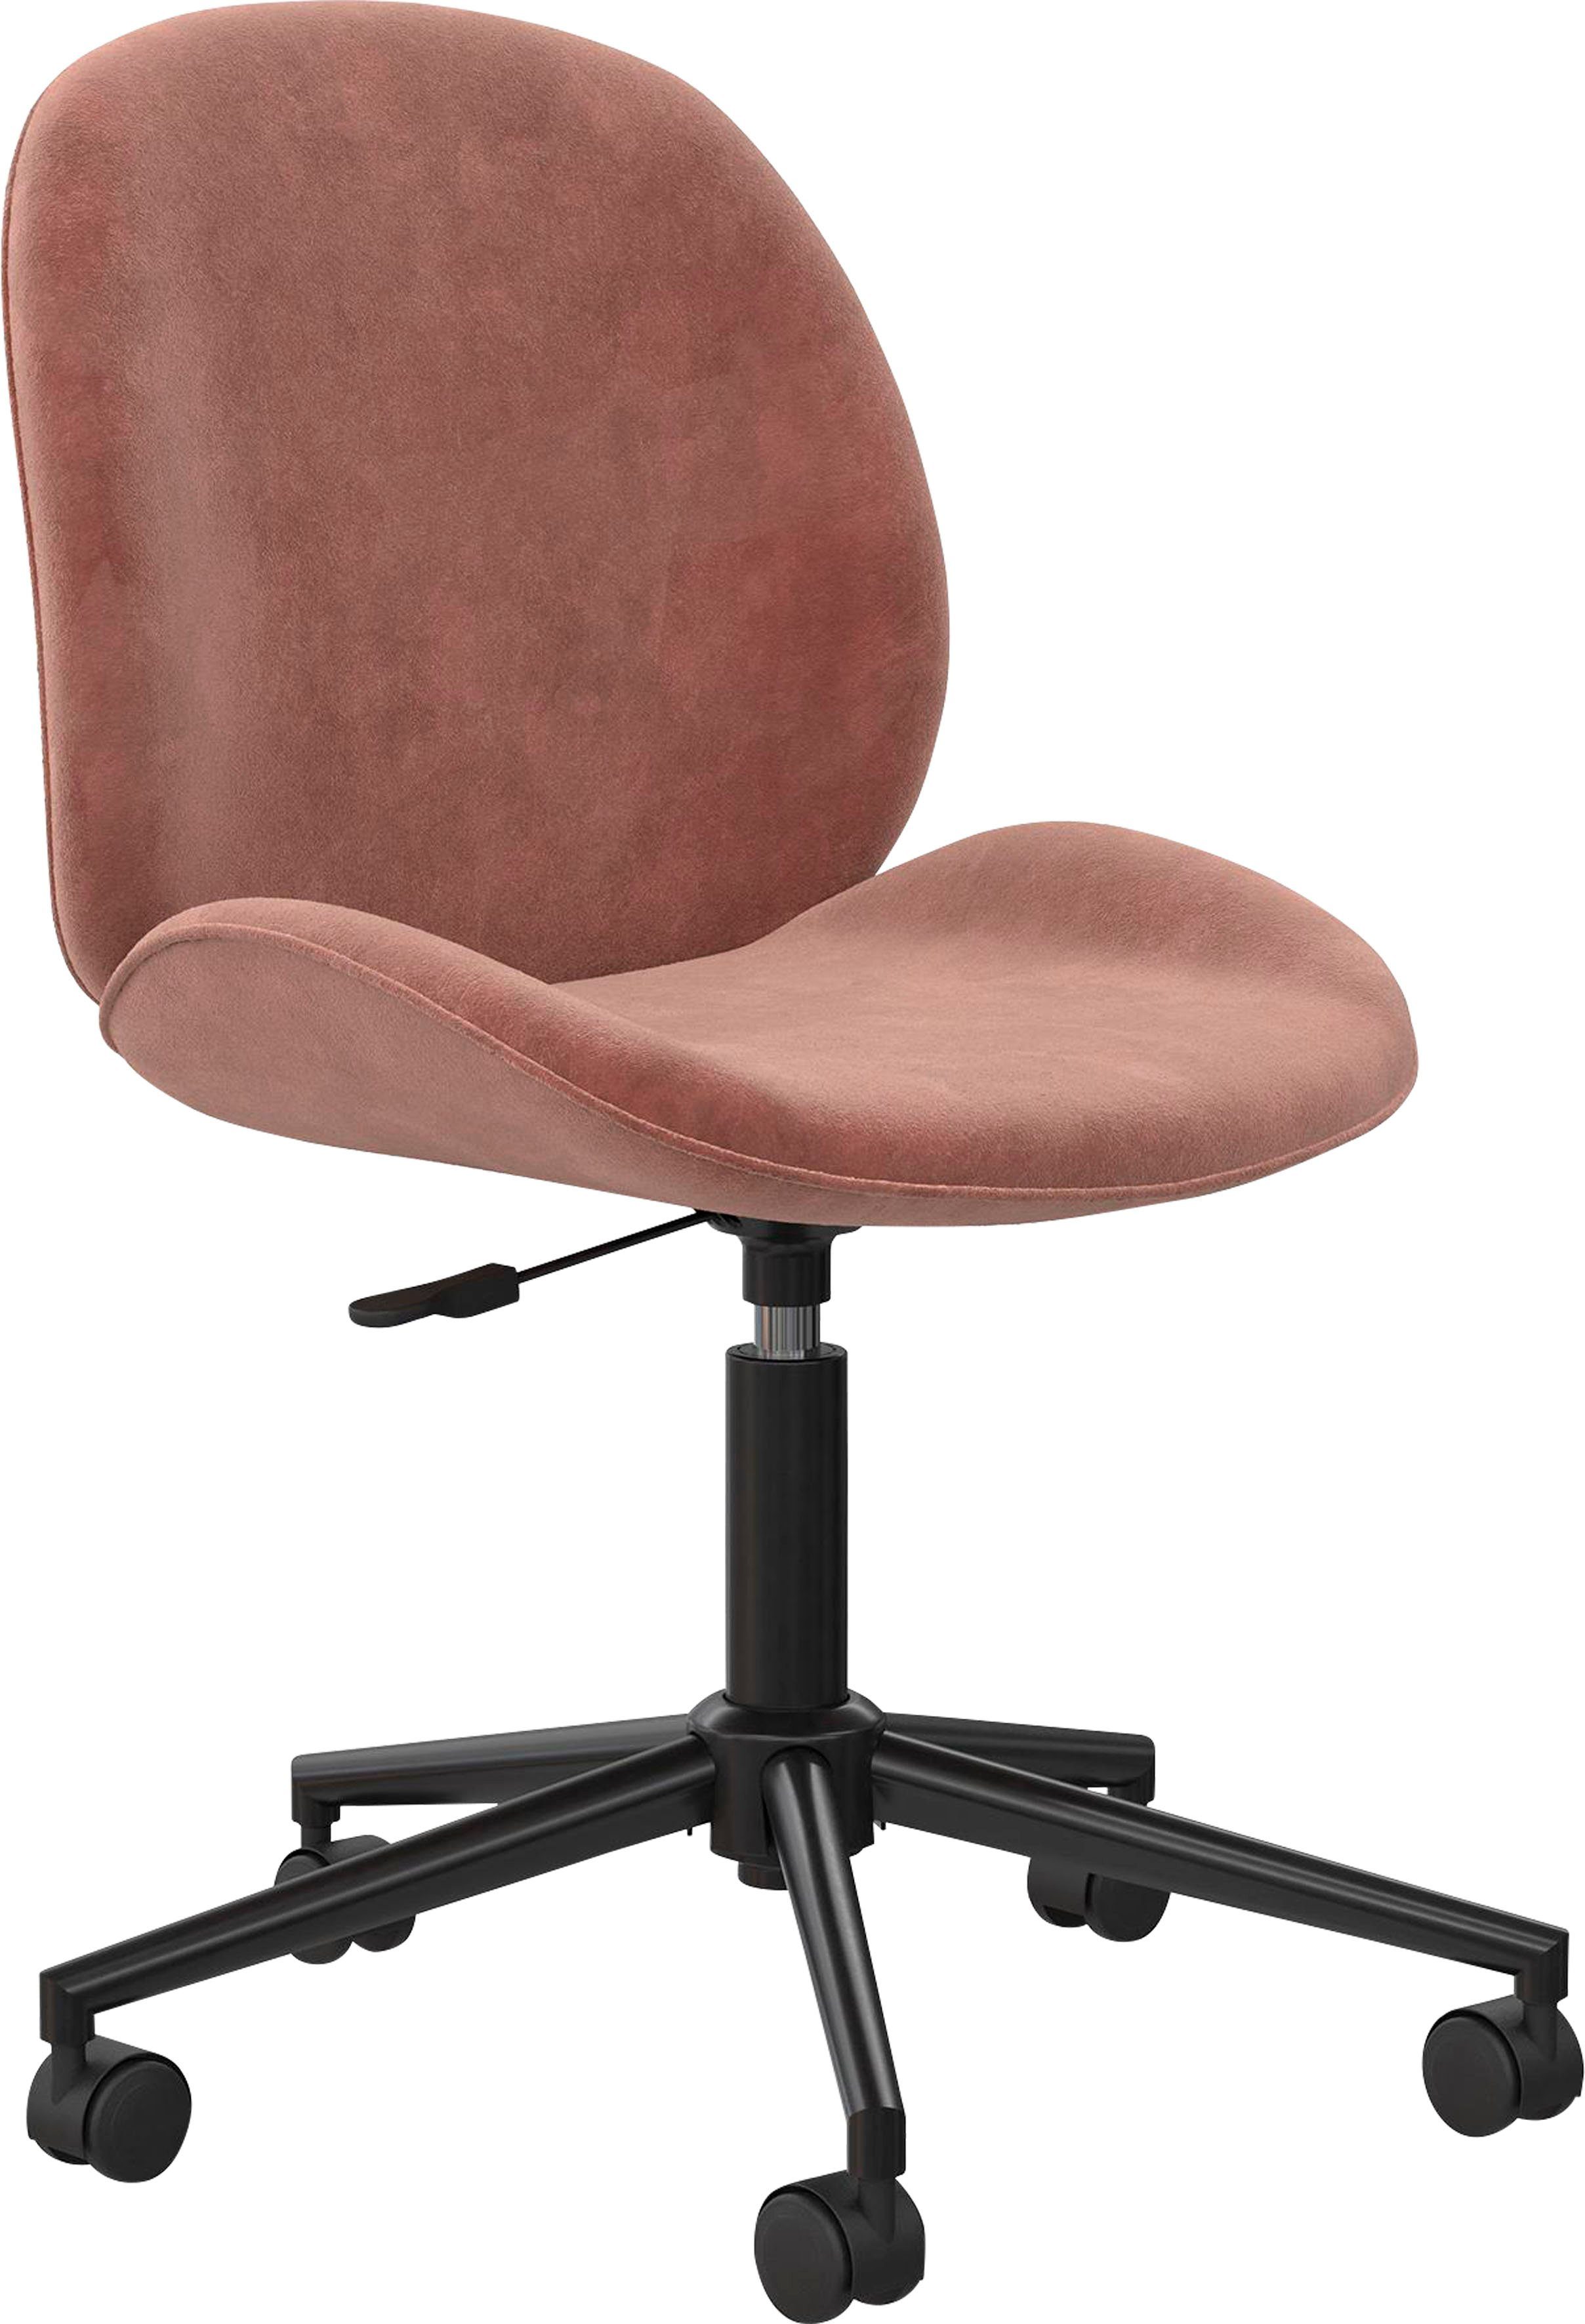 cosmoliving by cosmopolitan bureaustoel astor 360° draaifunctie, metalen frame, zithoogte 43-54 cm (1 stuk) roze